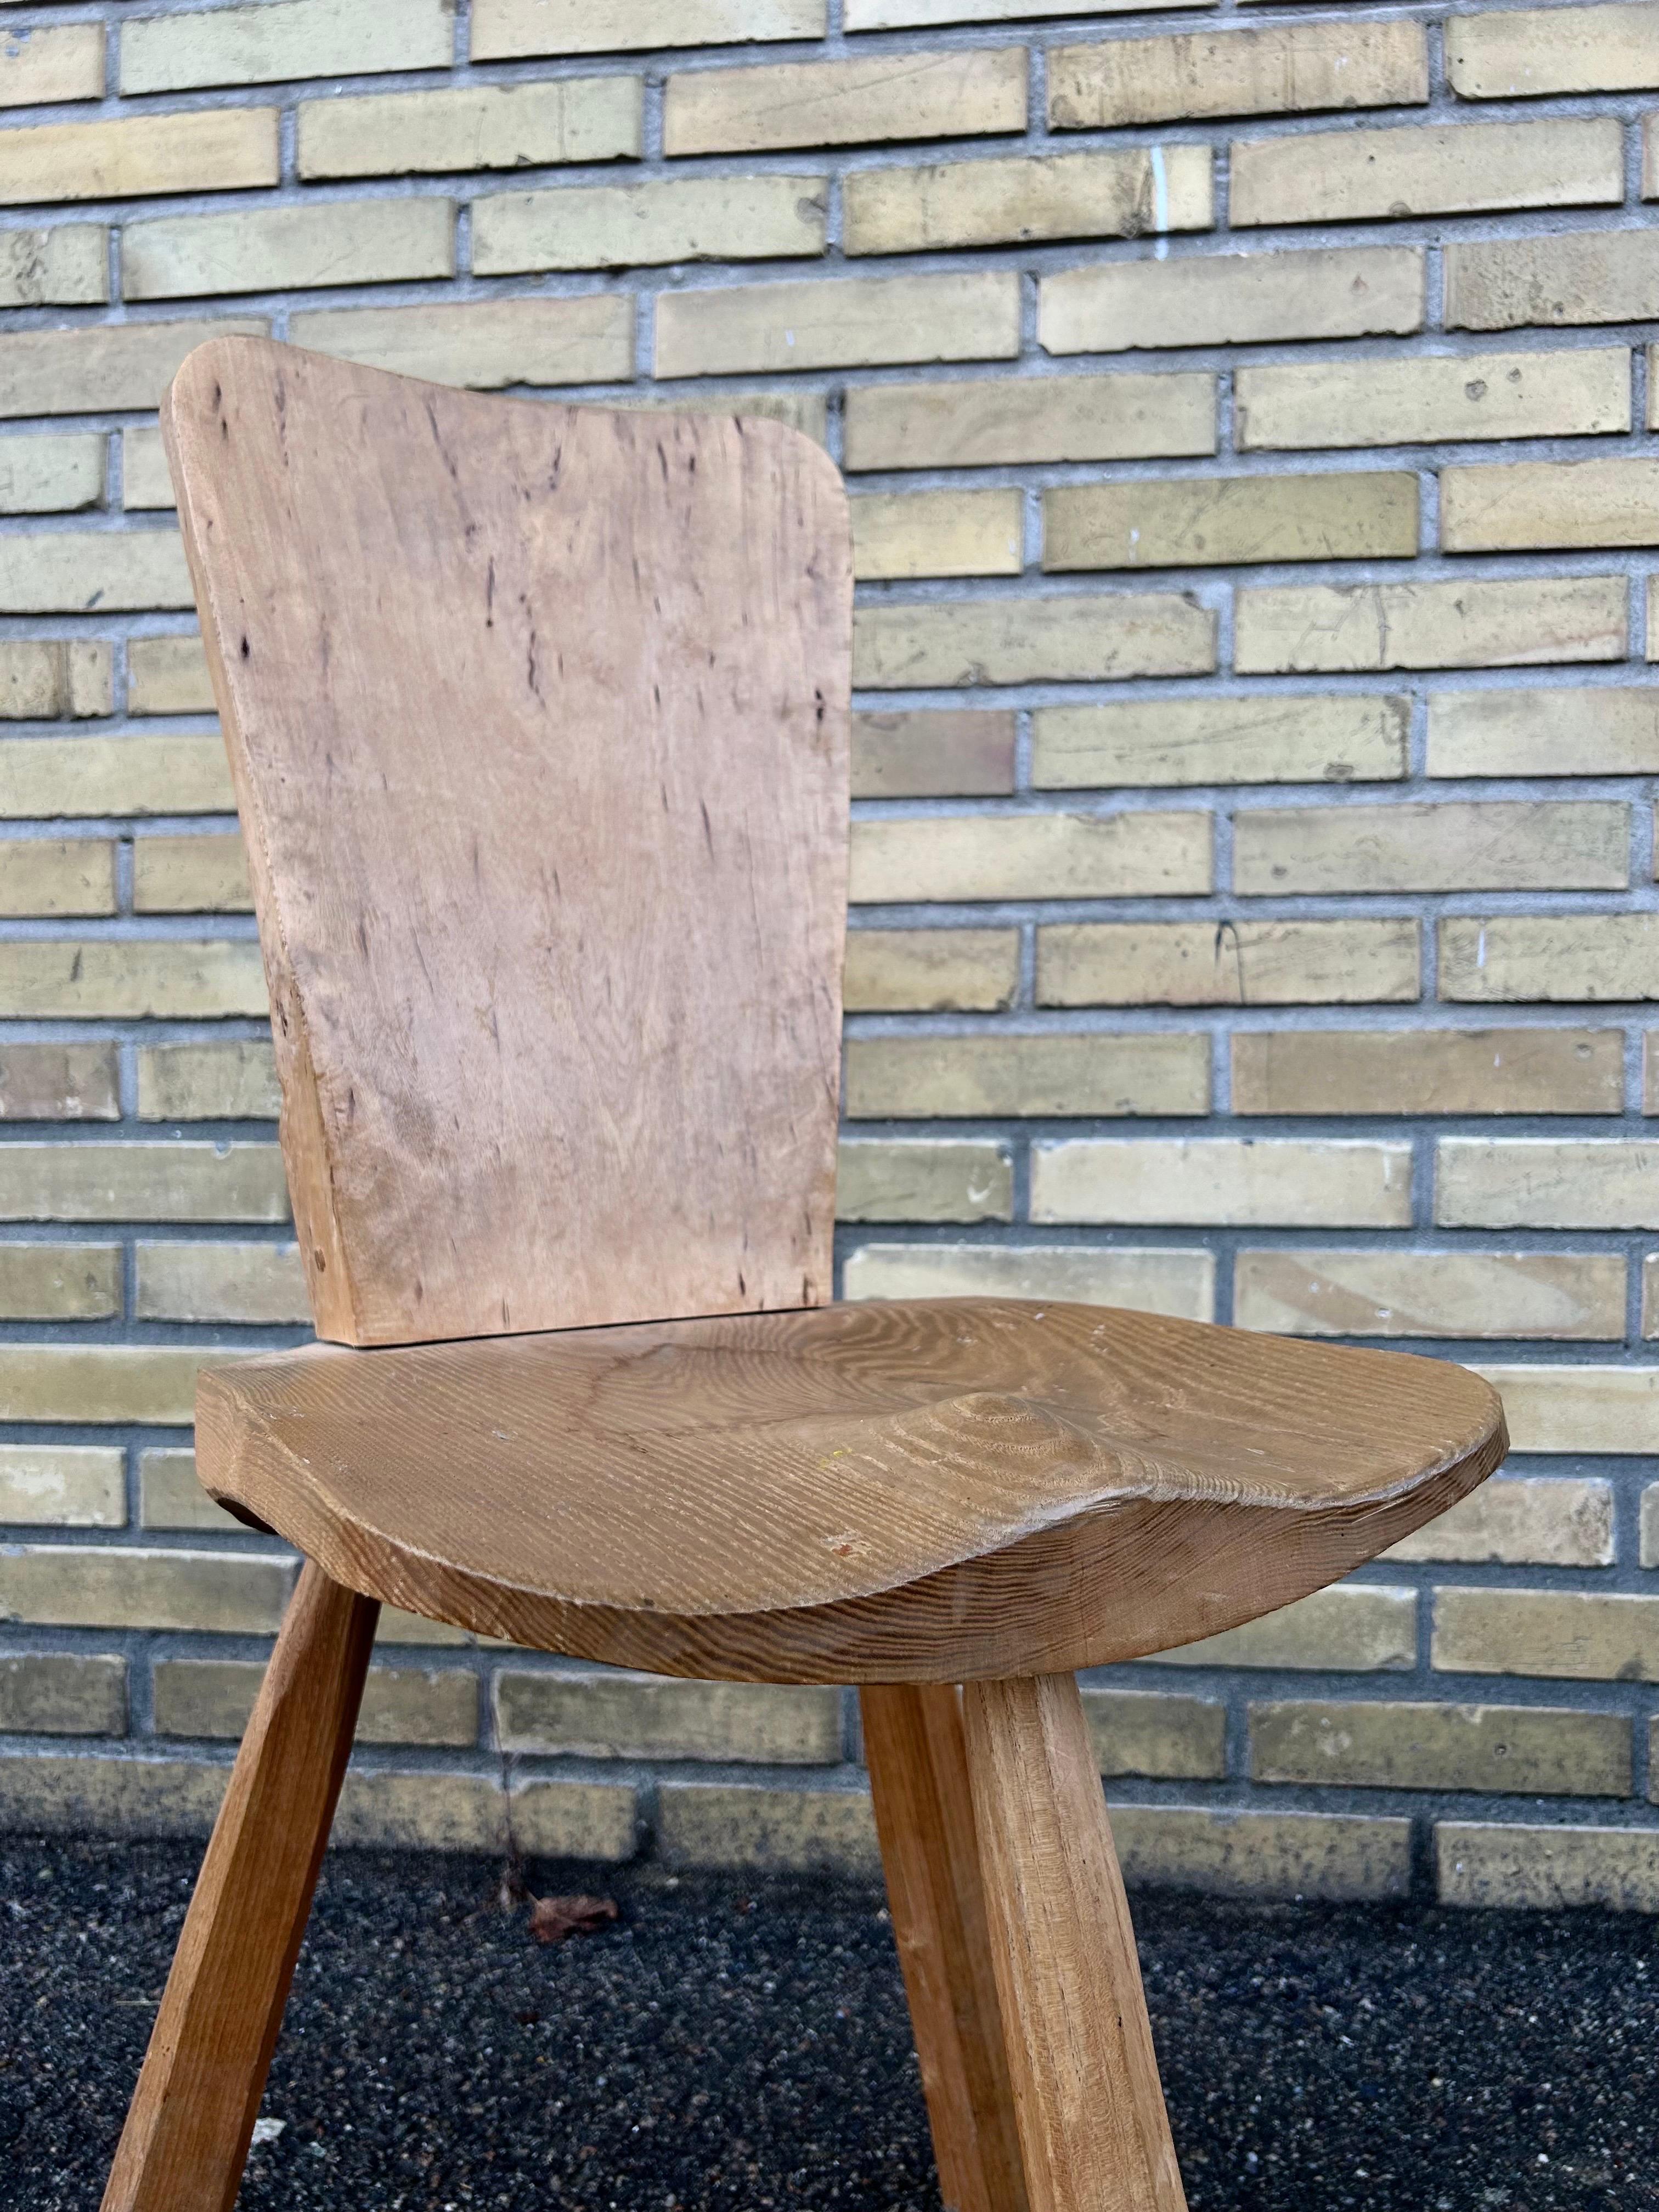 Rare chaise d'appoint brutaliste wabi sabi fabriquée dans les montagnes françaises dans les années 1950 en bois massif.

La chaise est en bon état d'origine avec une belle patine.

La chaise est le détail parfait pour tout style d'intérieur, du